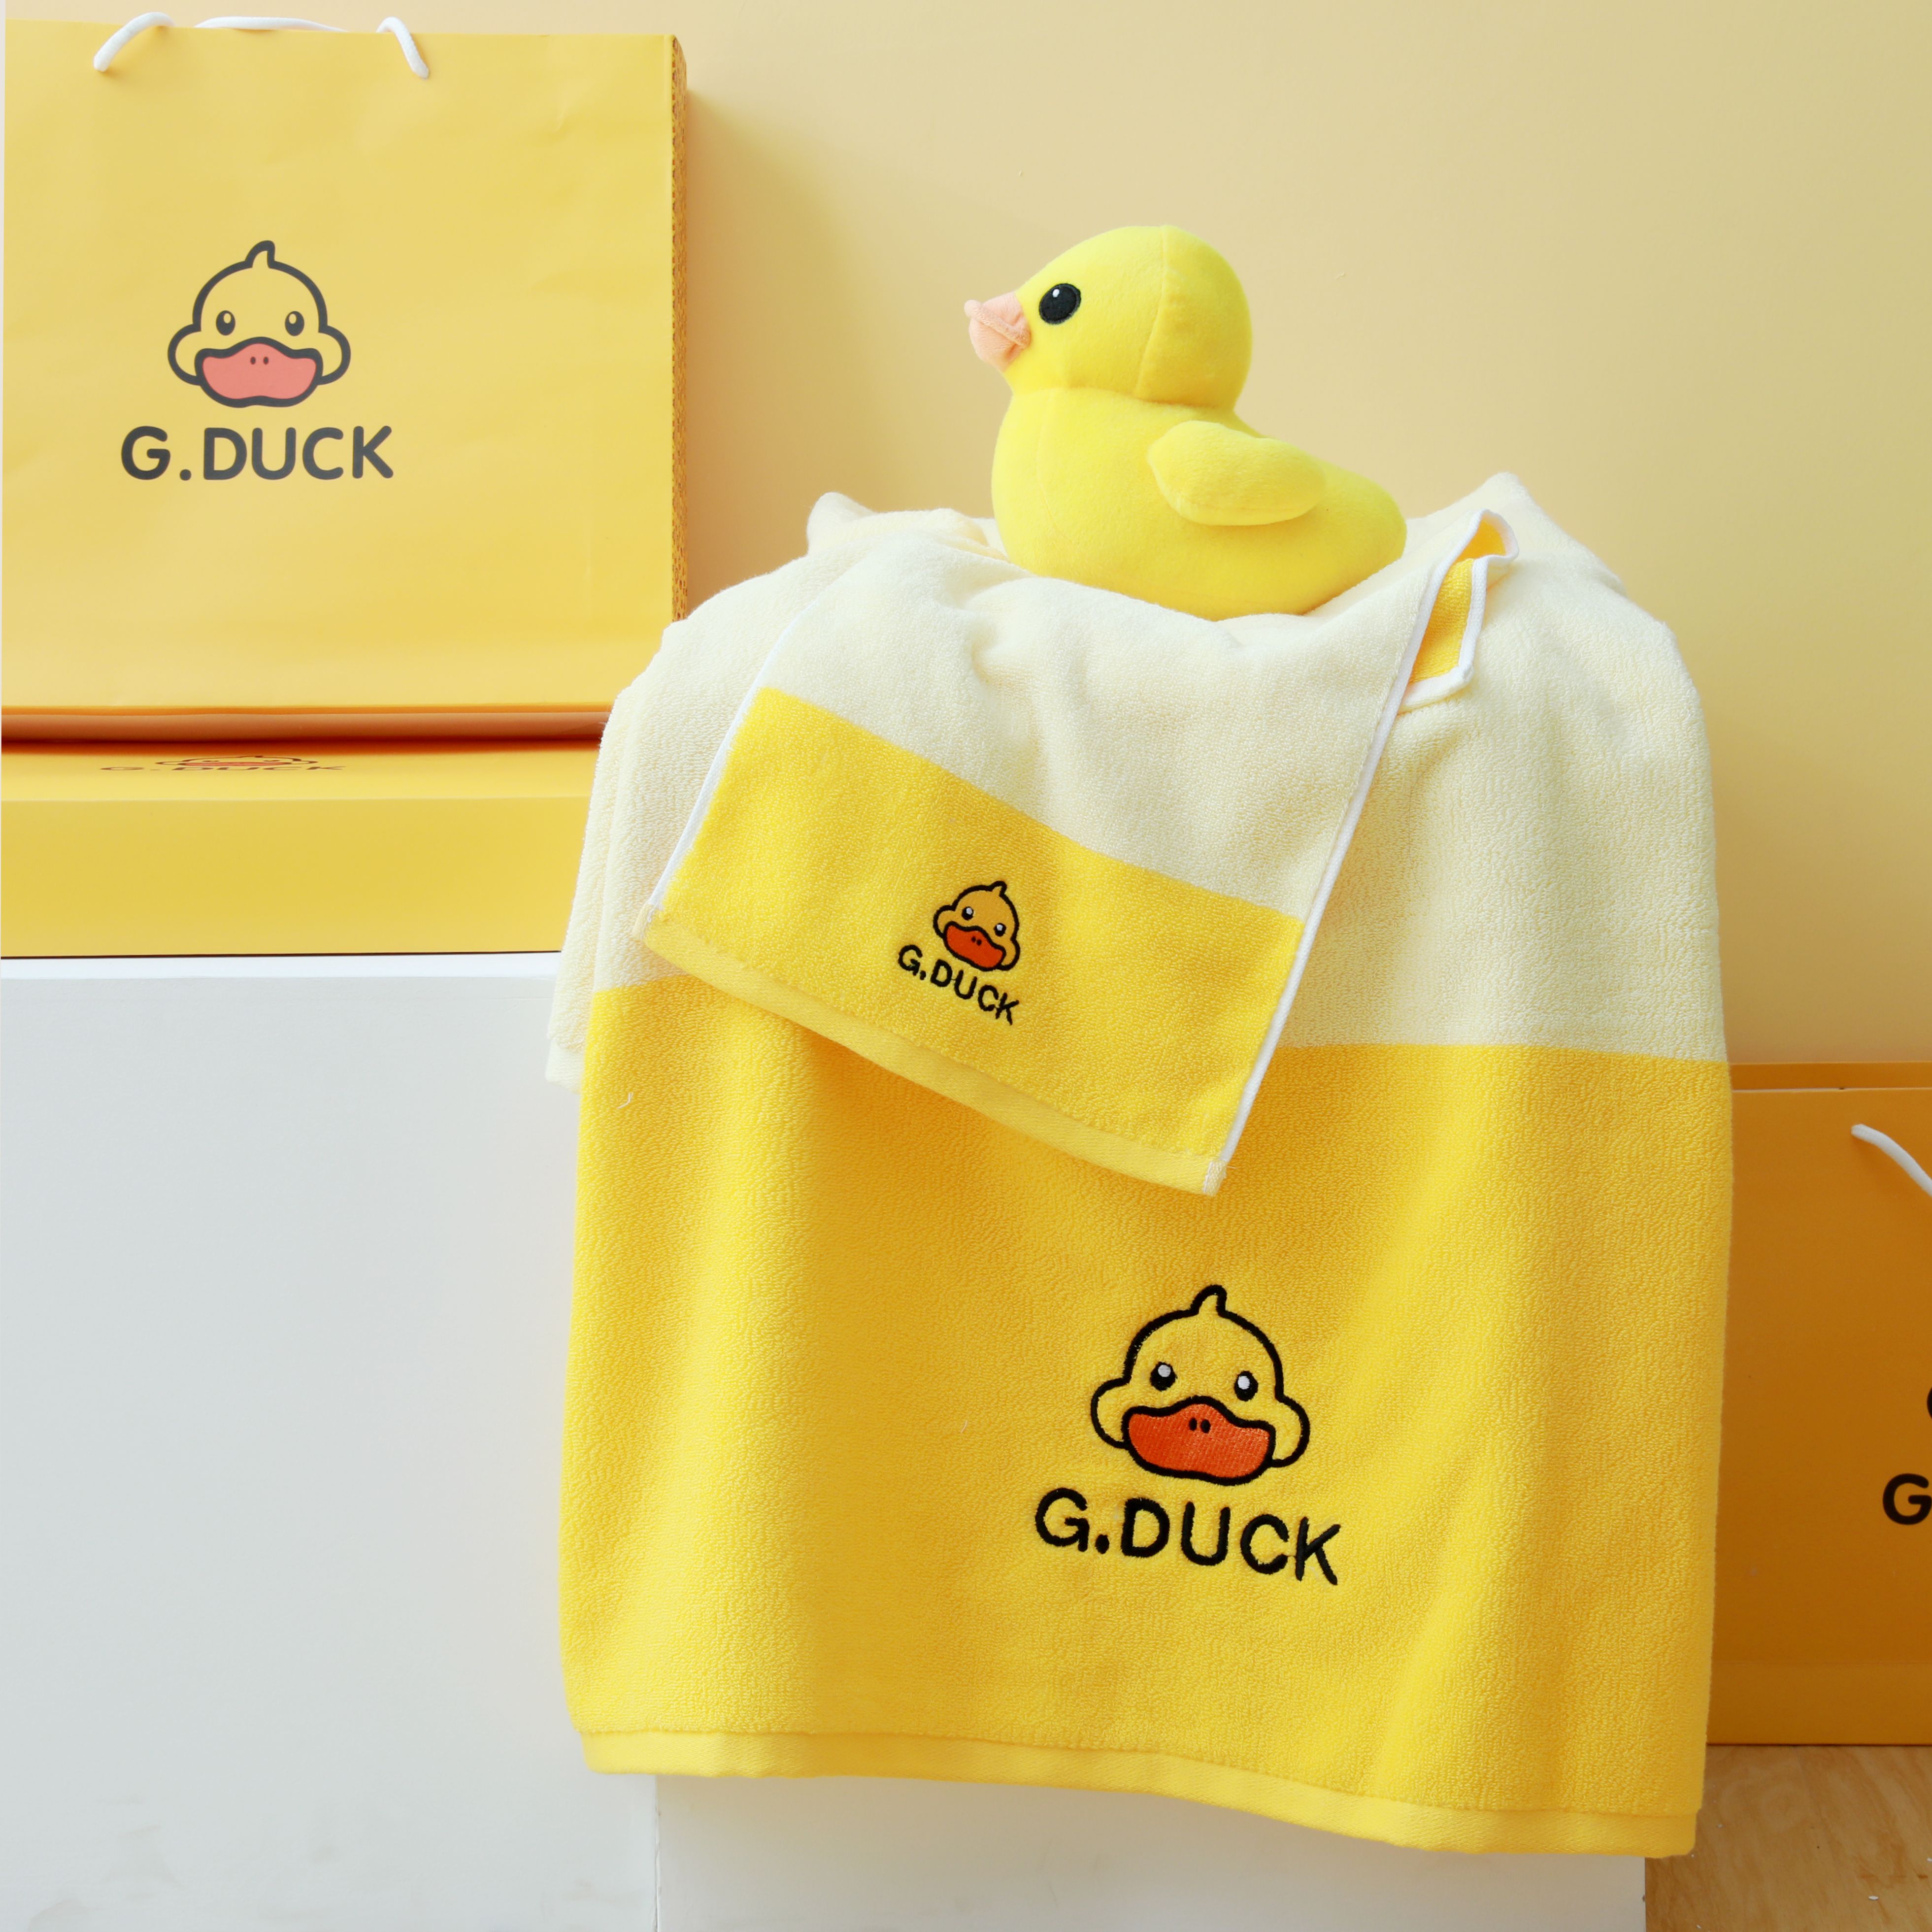 G.DUCK小黄鸭系列浴巾毛巾两条装组合 秒杀专用款式详情图1